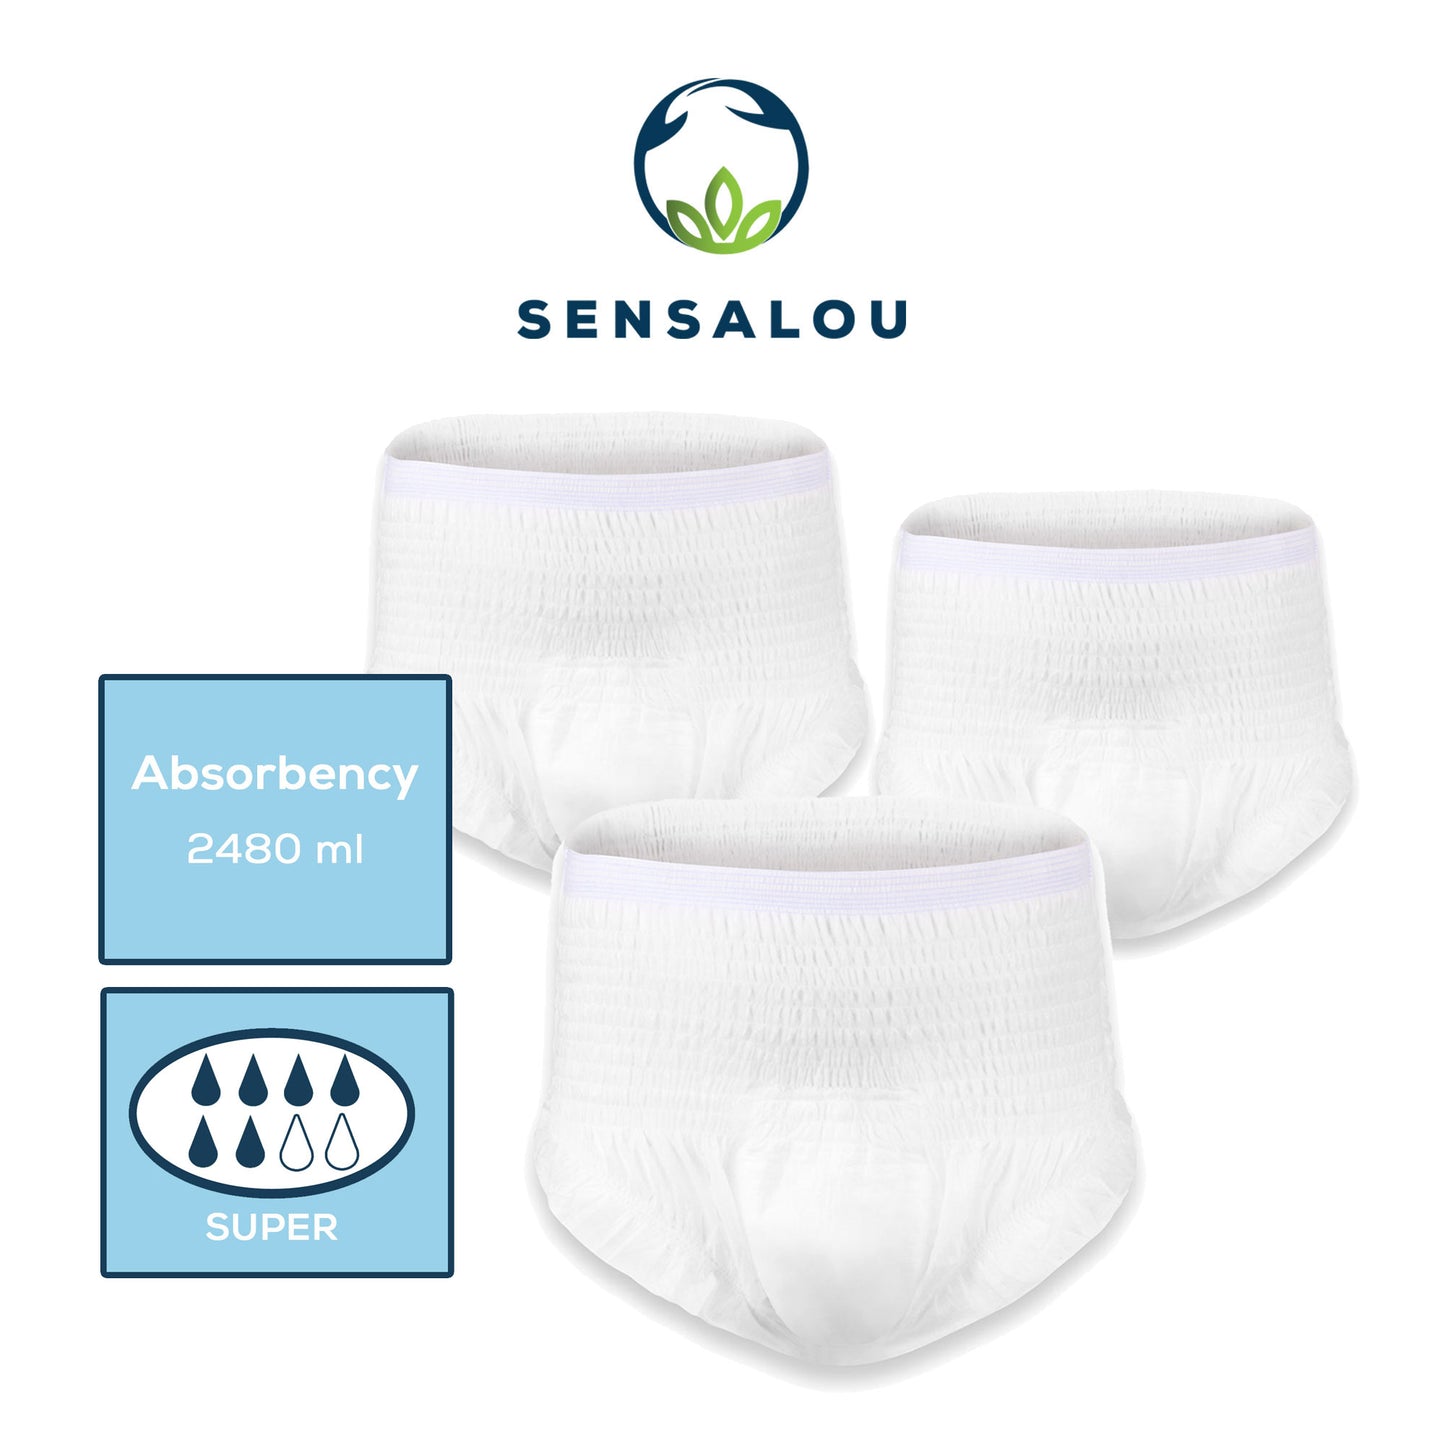 Test des pantalons à couches Sensalou en taille du paquet. M, L, XL